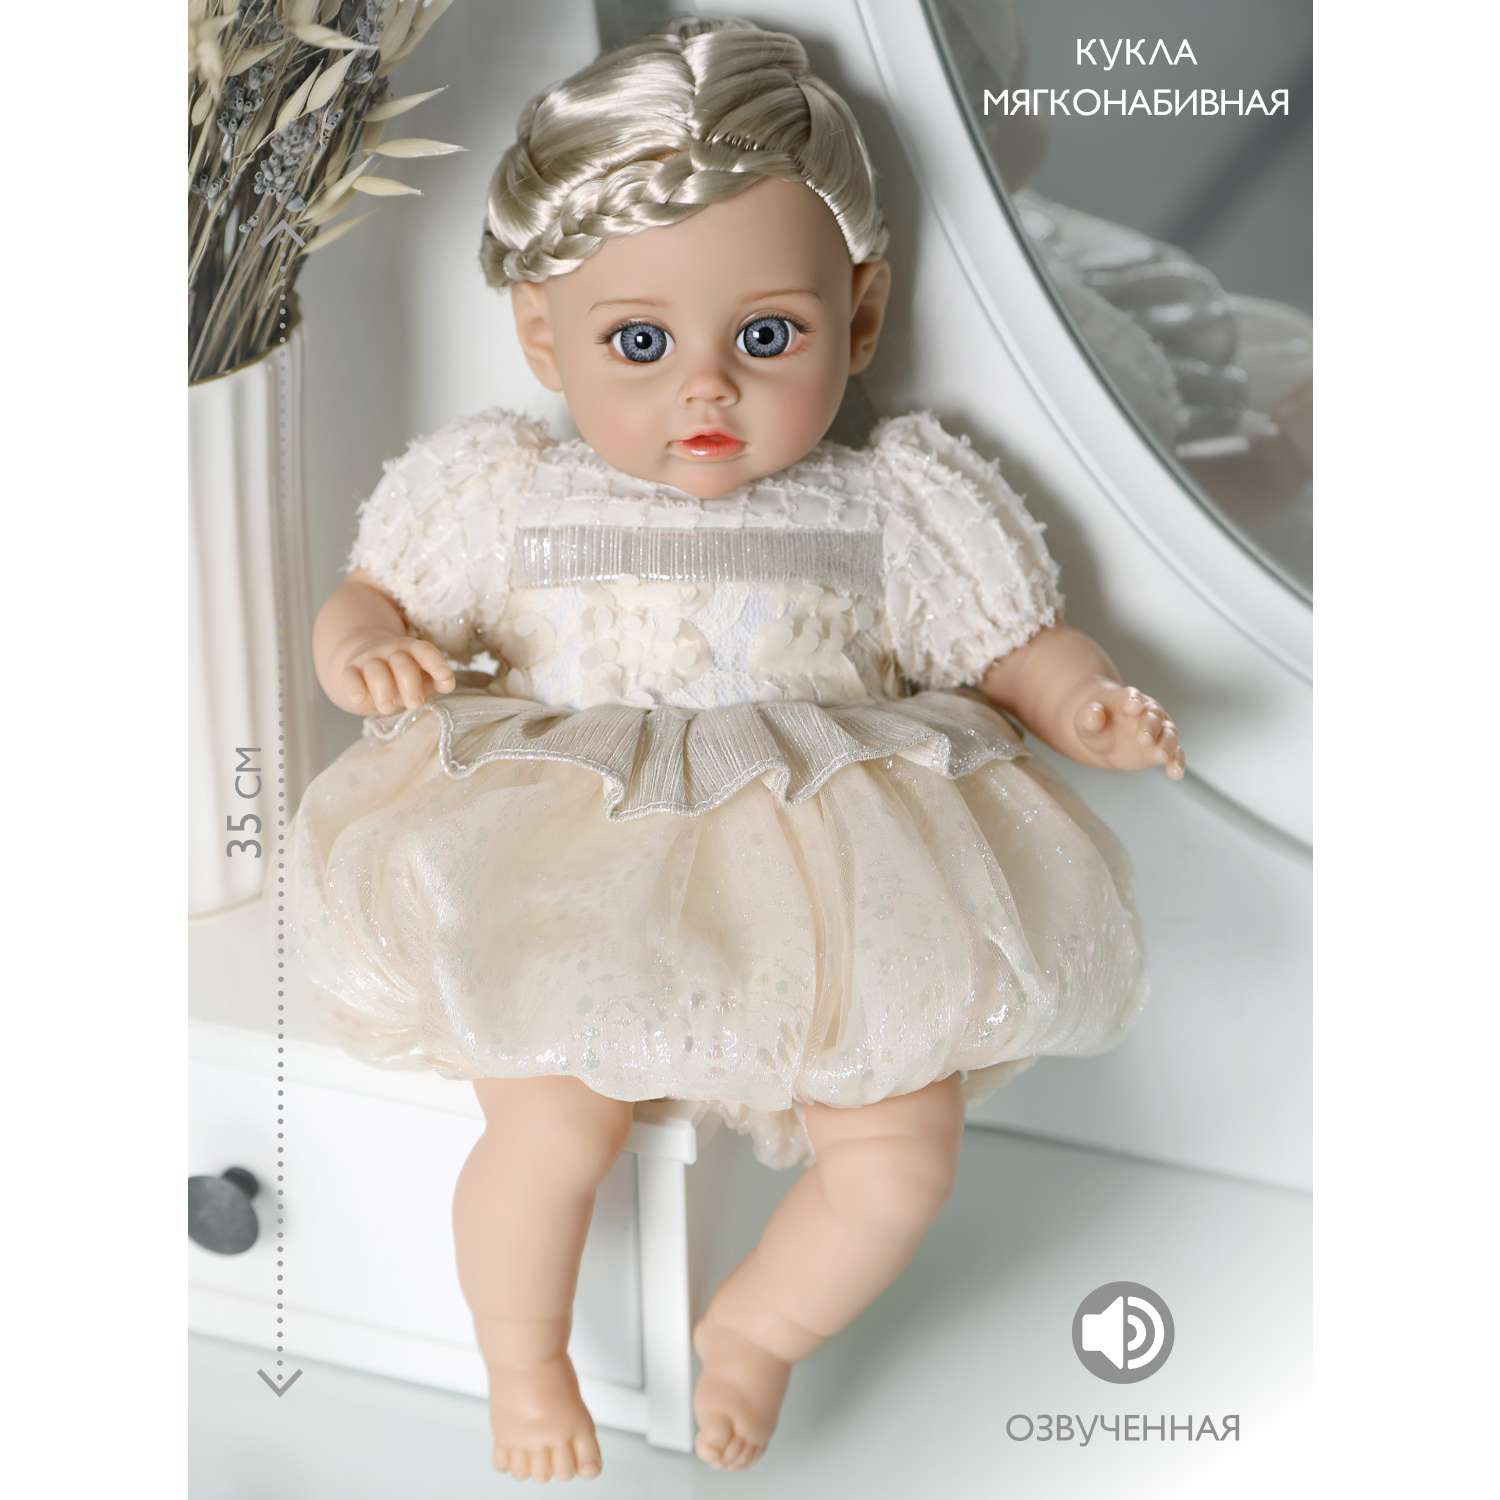 Кукла пупс для девочки Наша Игрушка Мягконабивная озвученная 35 см в белом платье 803820 - фото 1